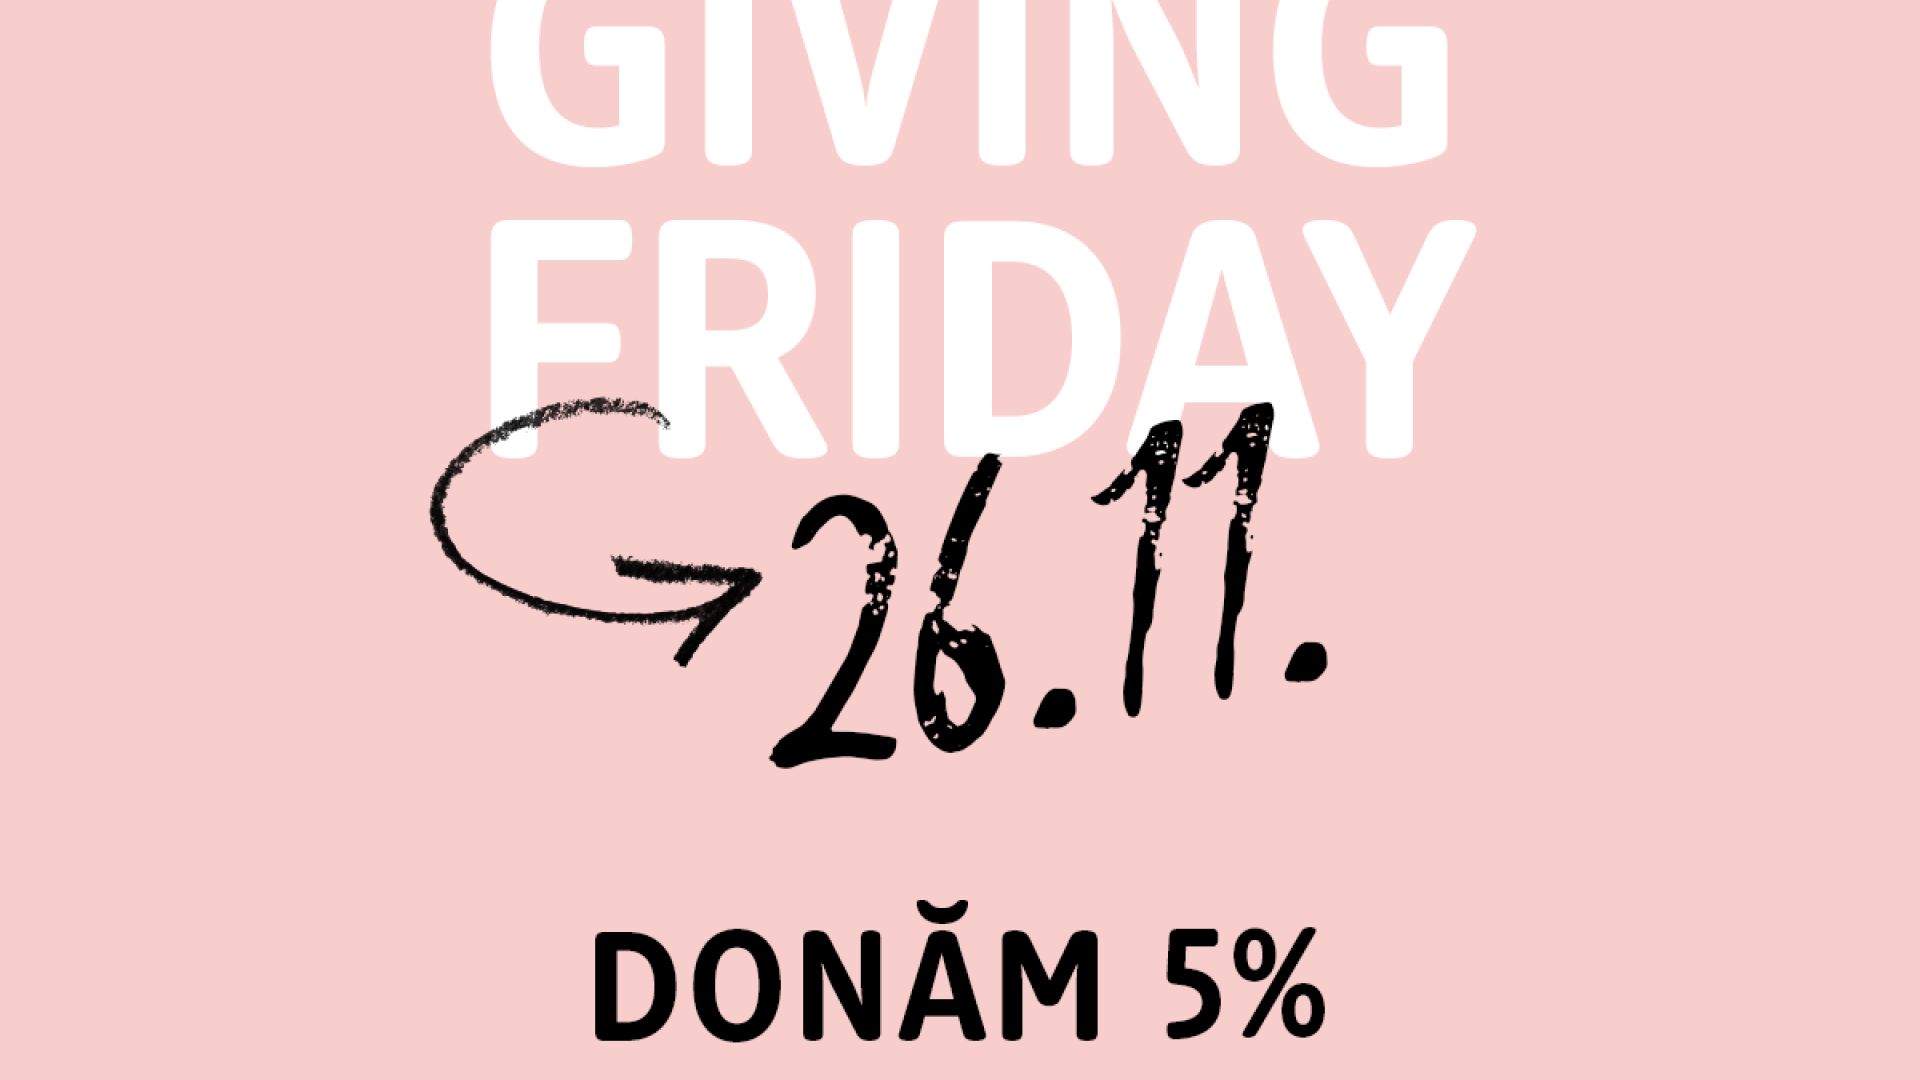 (P) Giving Friday - în loc de Black Friday, dm donează 5% din încasări pentru copiii în nevoie